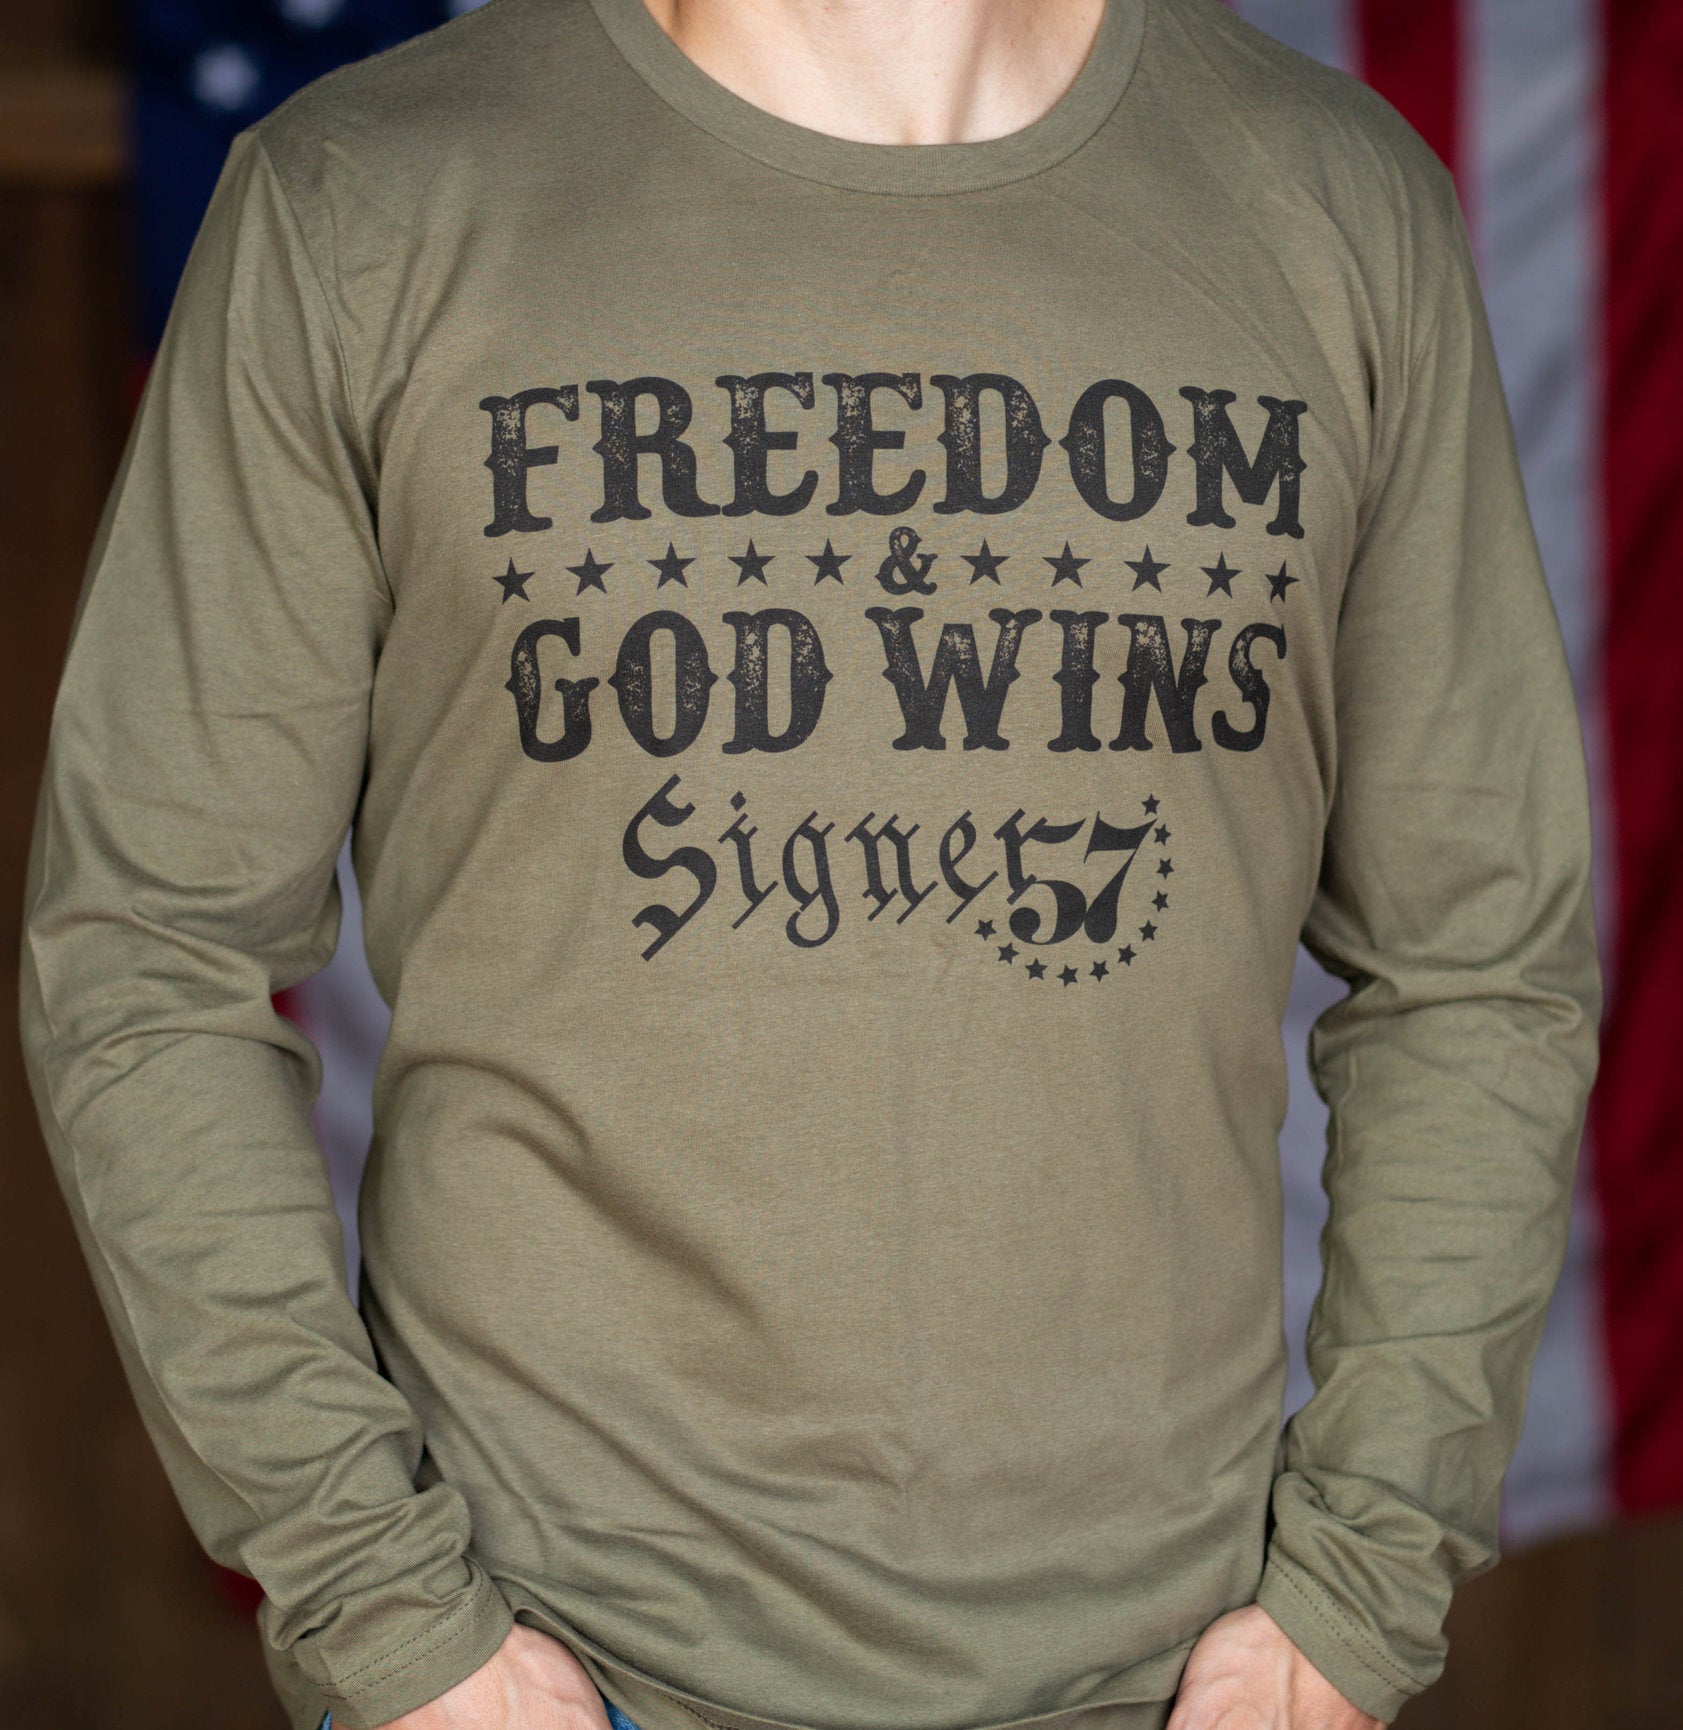 UNISEX Long Sleeve Shirt - Freedom & God Wins